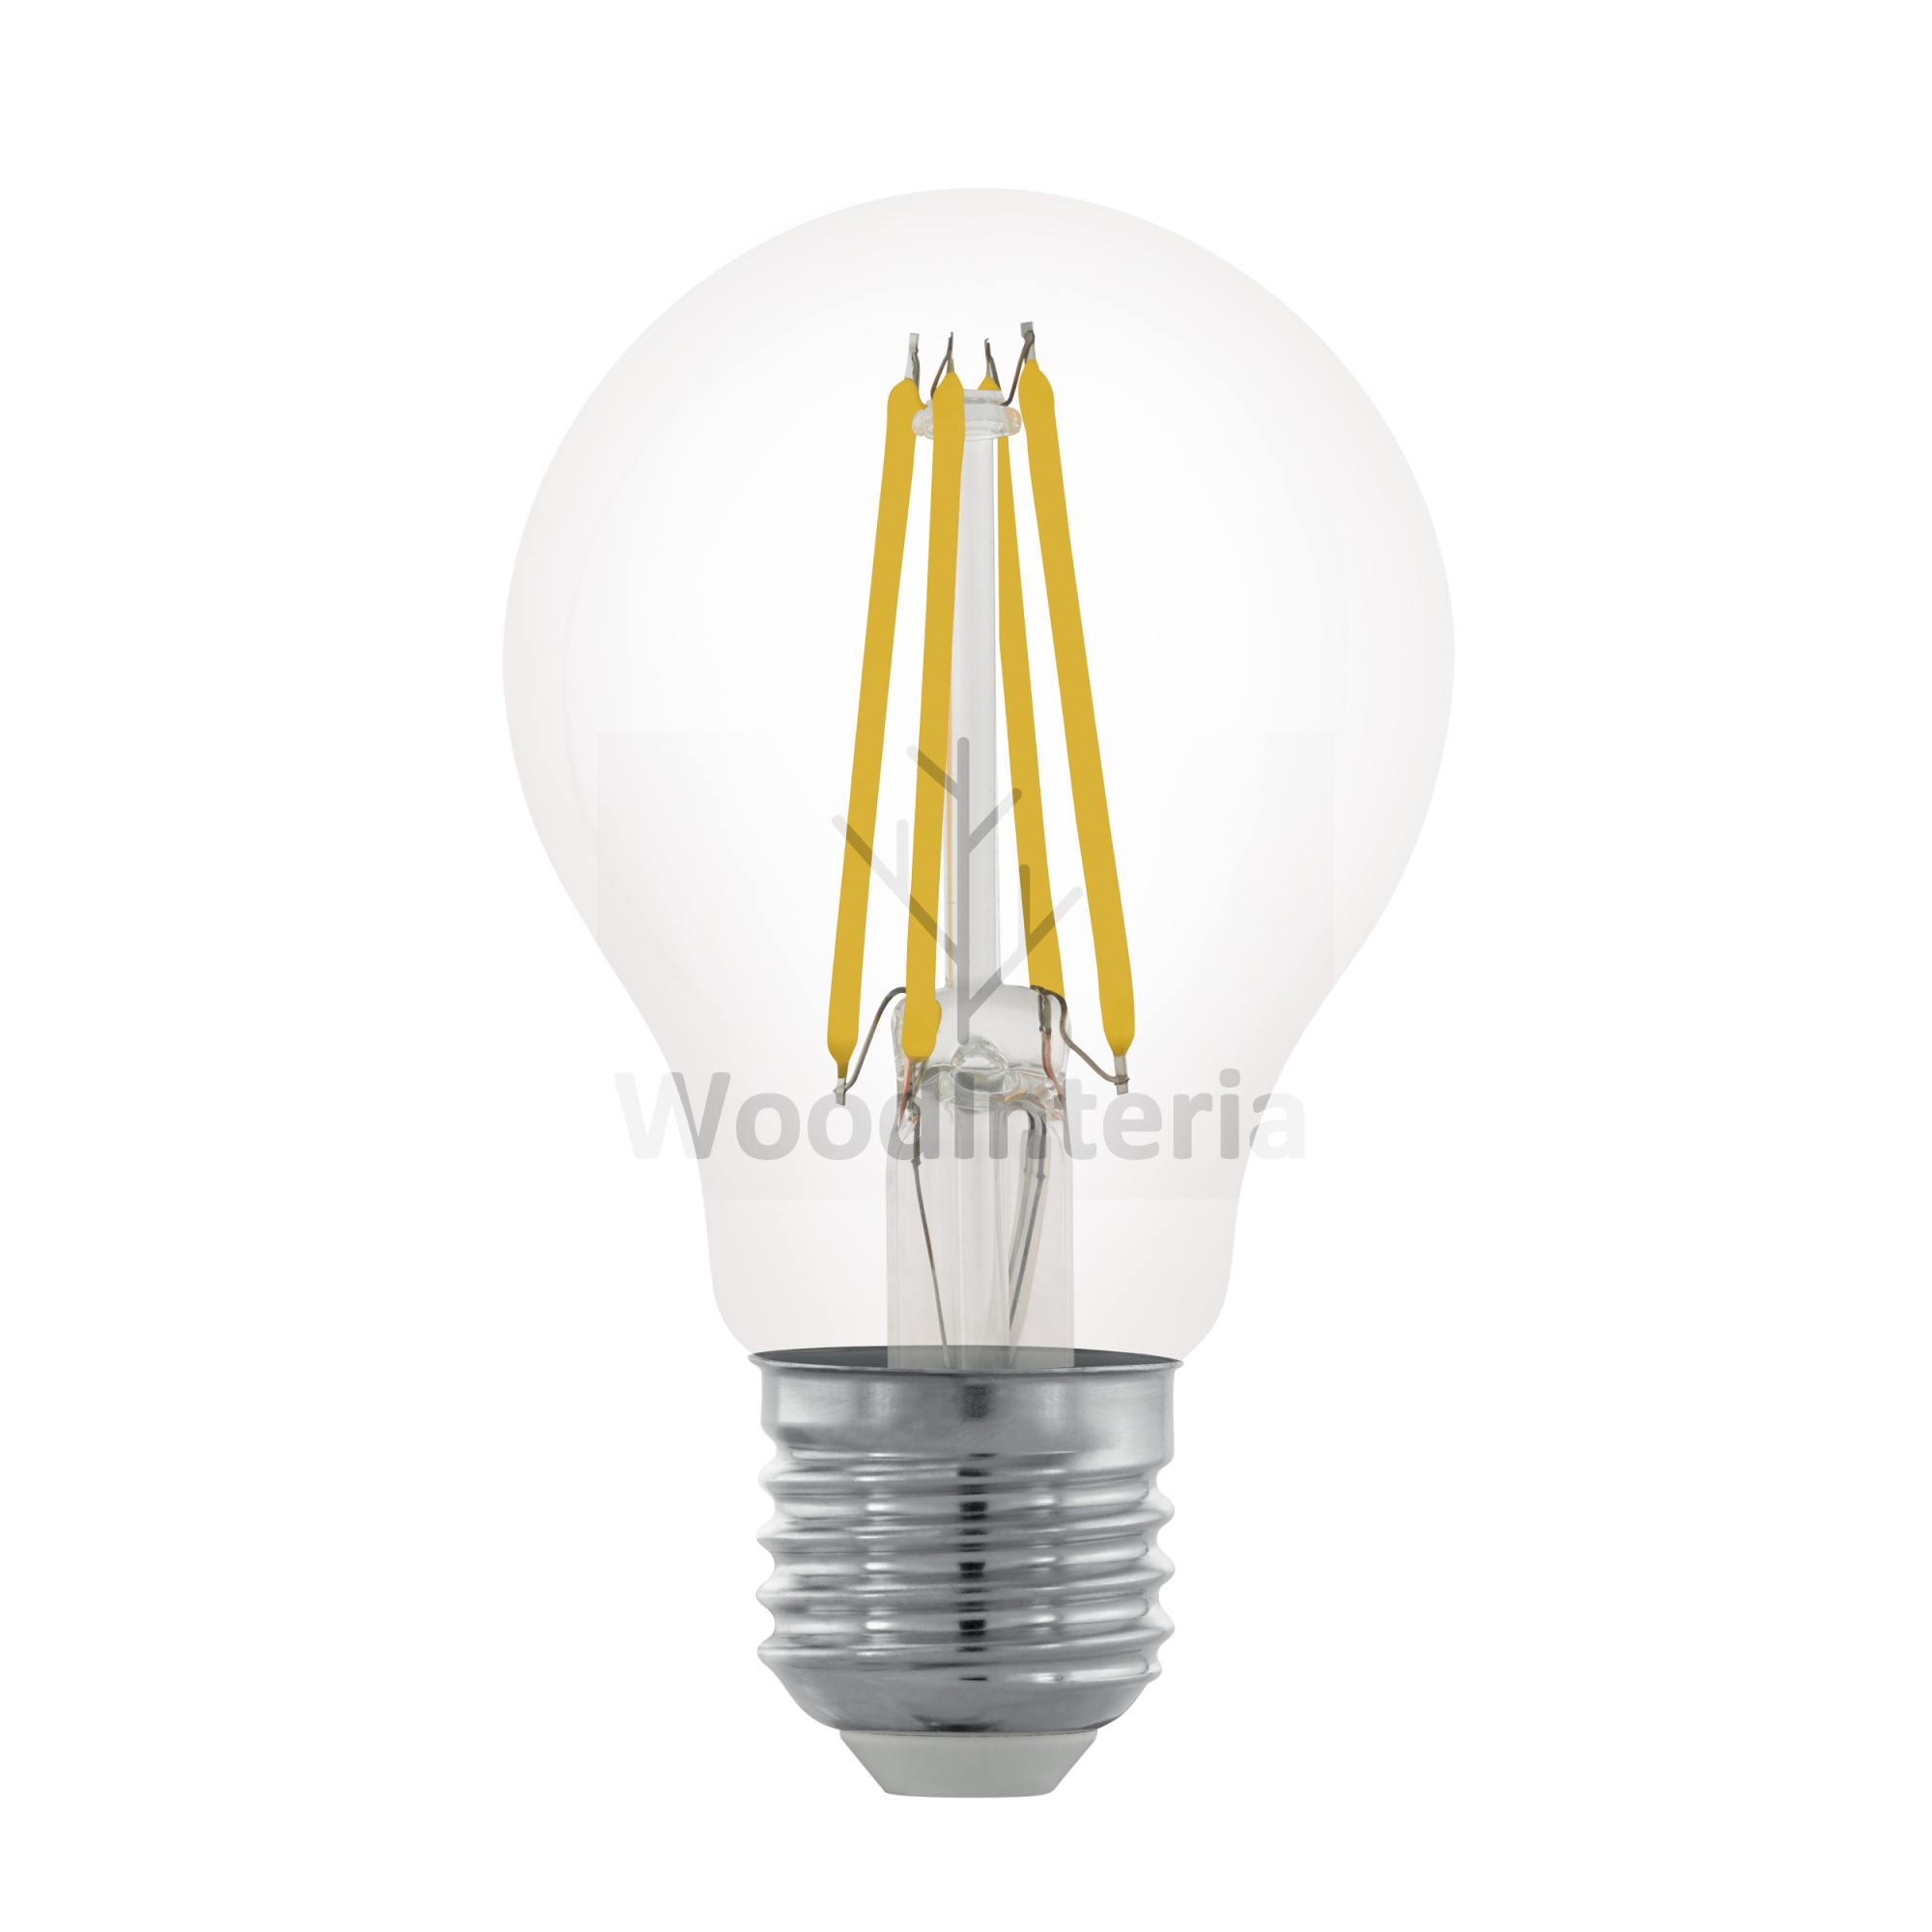 фото лампочка clean bulb #12 в скандинавском интерьере лофт эко | WoodInteria